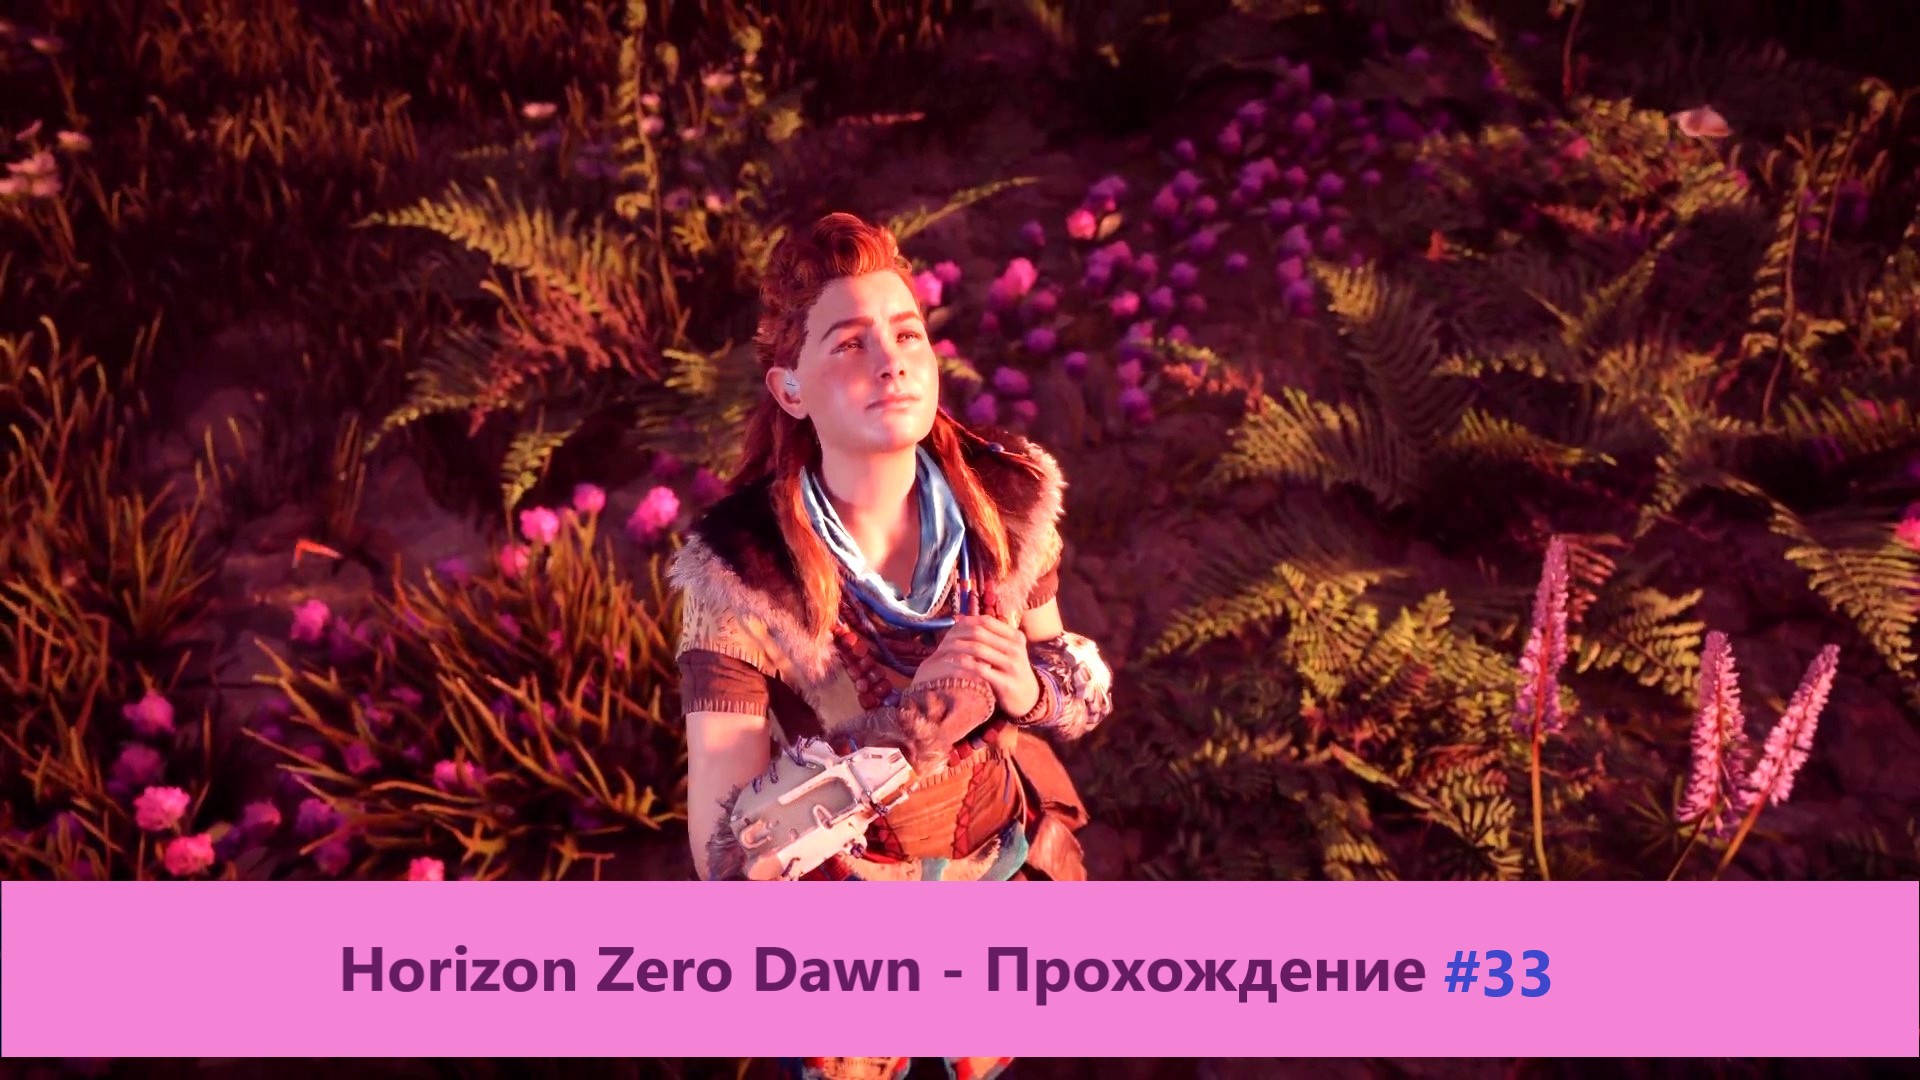 Horizon Zero Dawn - Прохождение #33